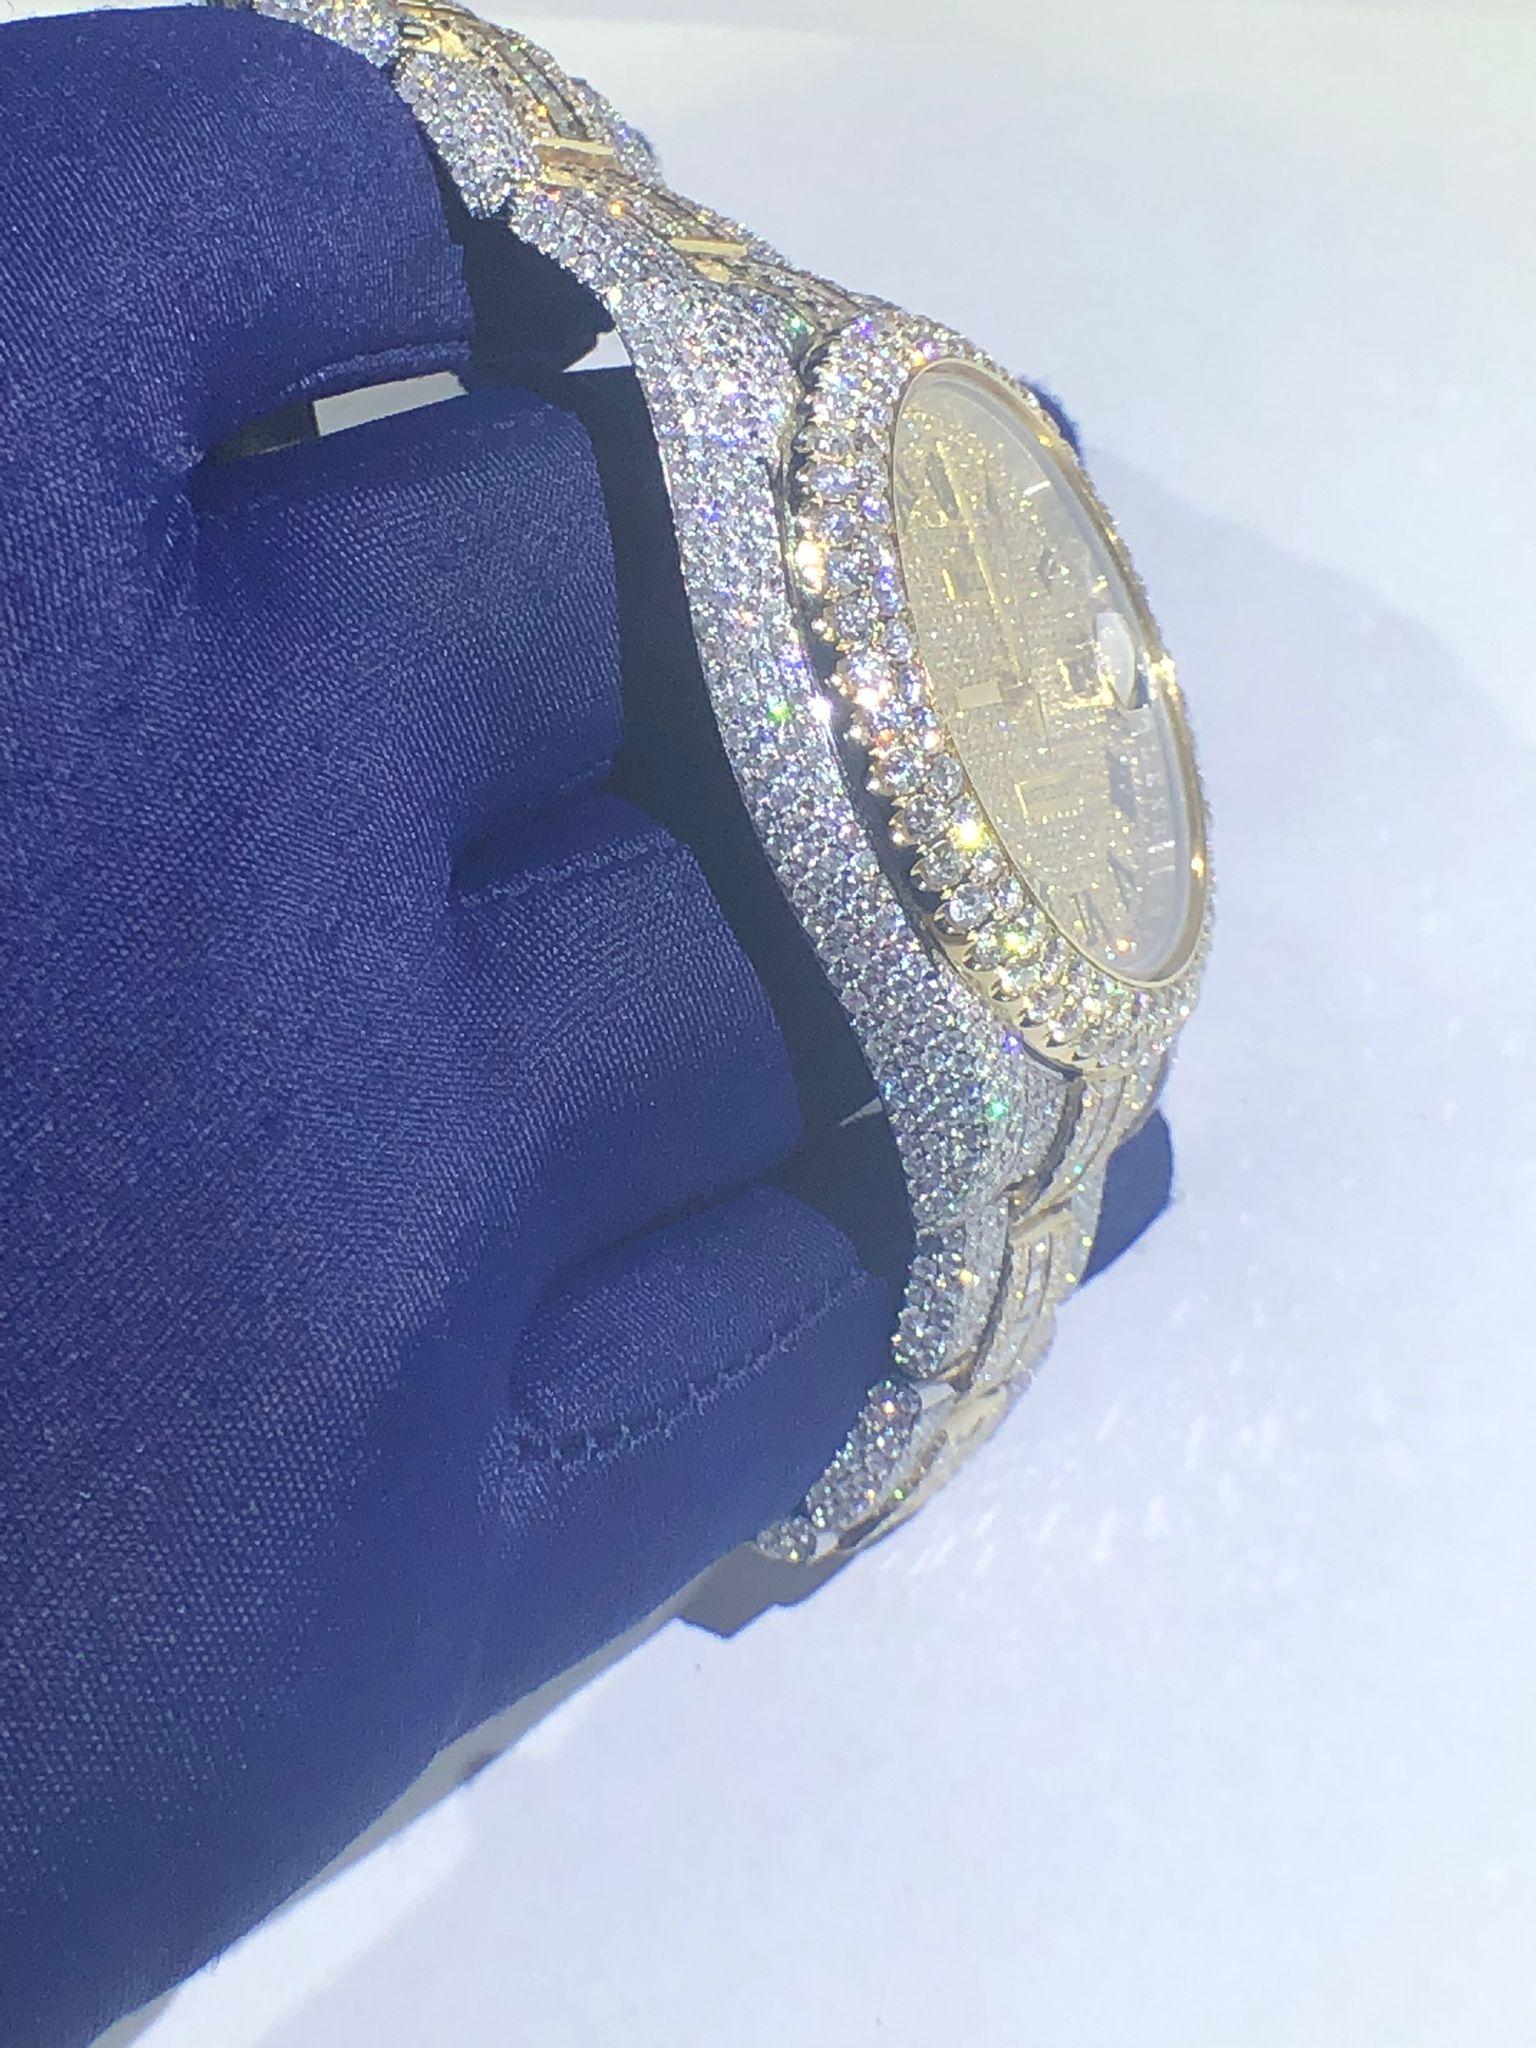  Authentische Rolex Datejust 41mm Komplett mit Diamanten in Collection'S-Qualität mit weißem Rund- und Smaragdschliff versehen

26 Karat Diamanten in Collection'S-Qualität

vollständig vereistes Diamant-Zifferblatt und -Lünette
Die Anpassung der Uhr